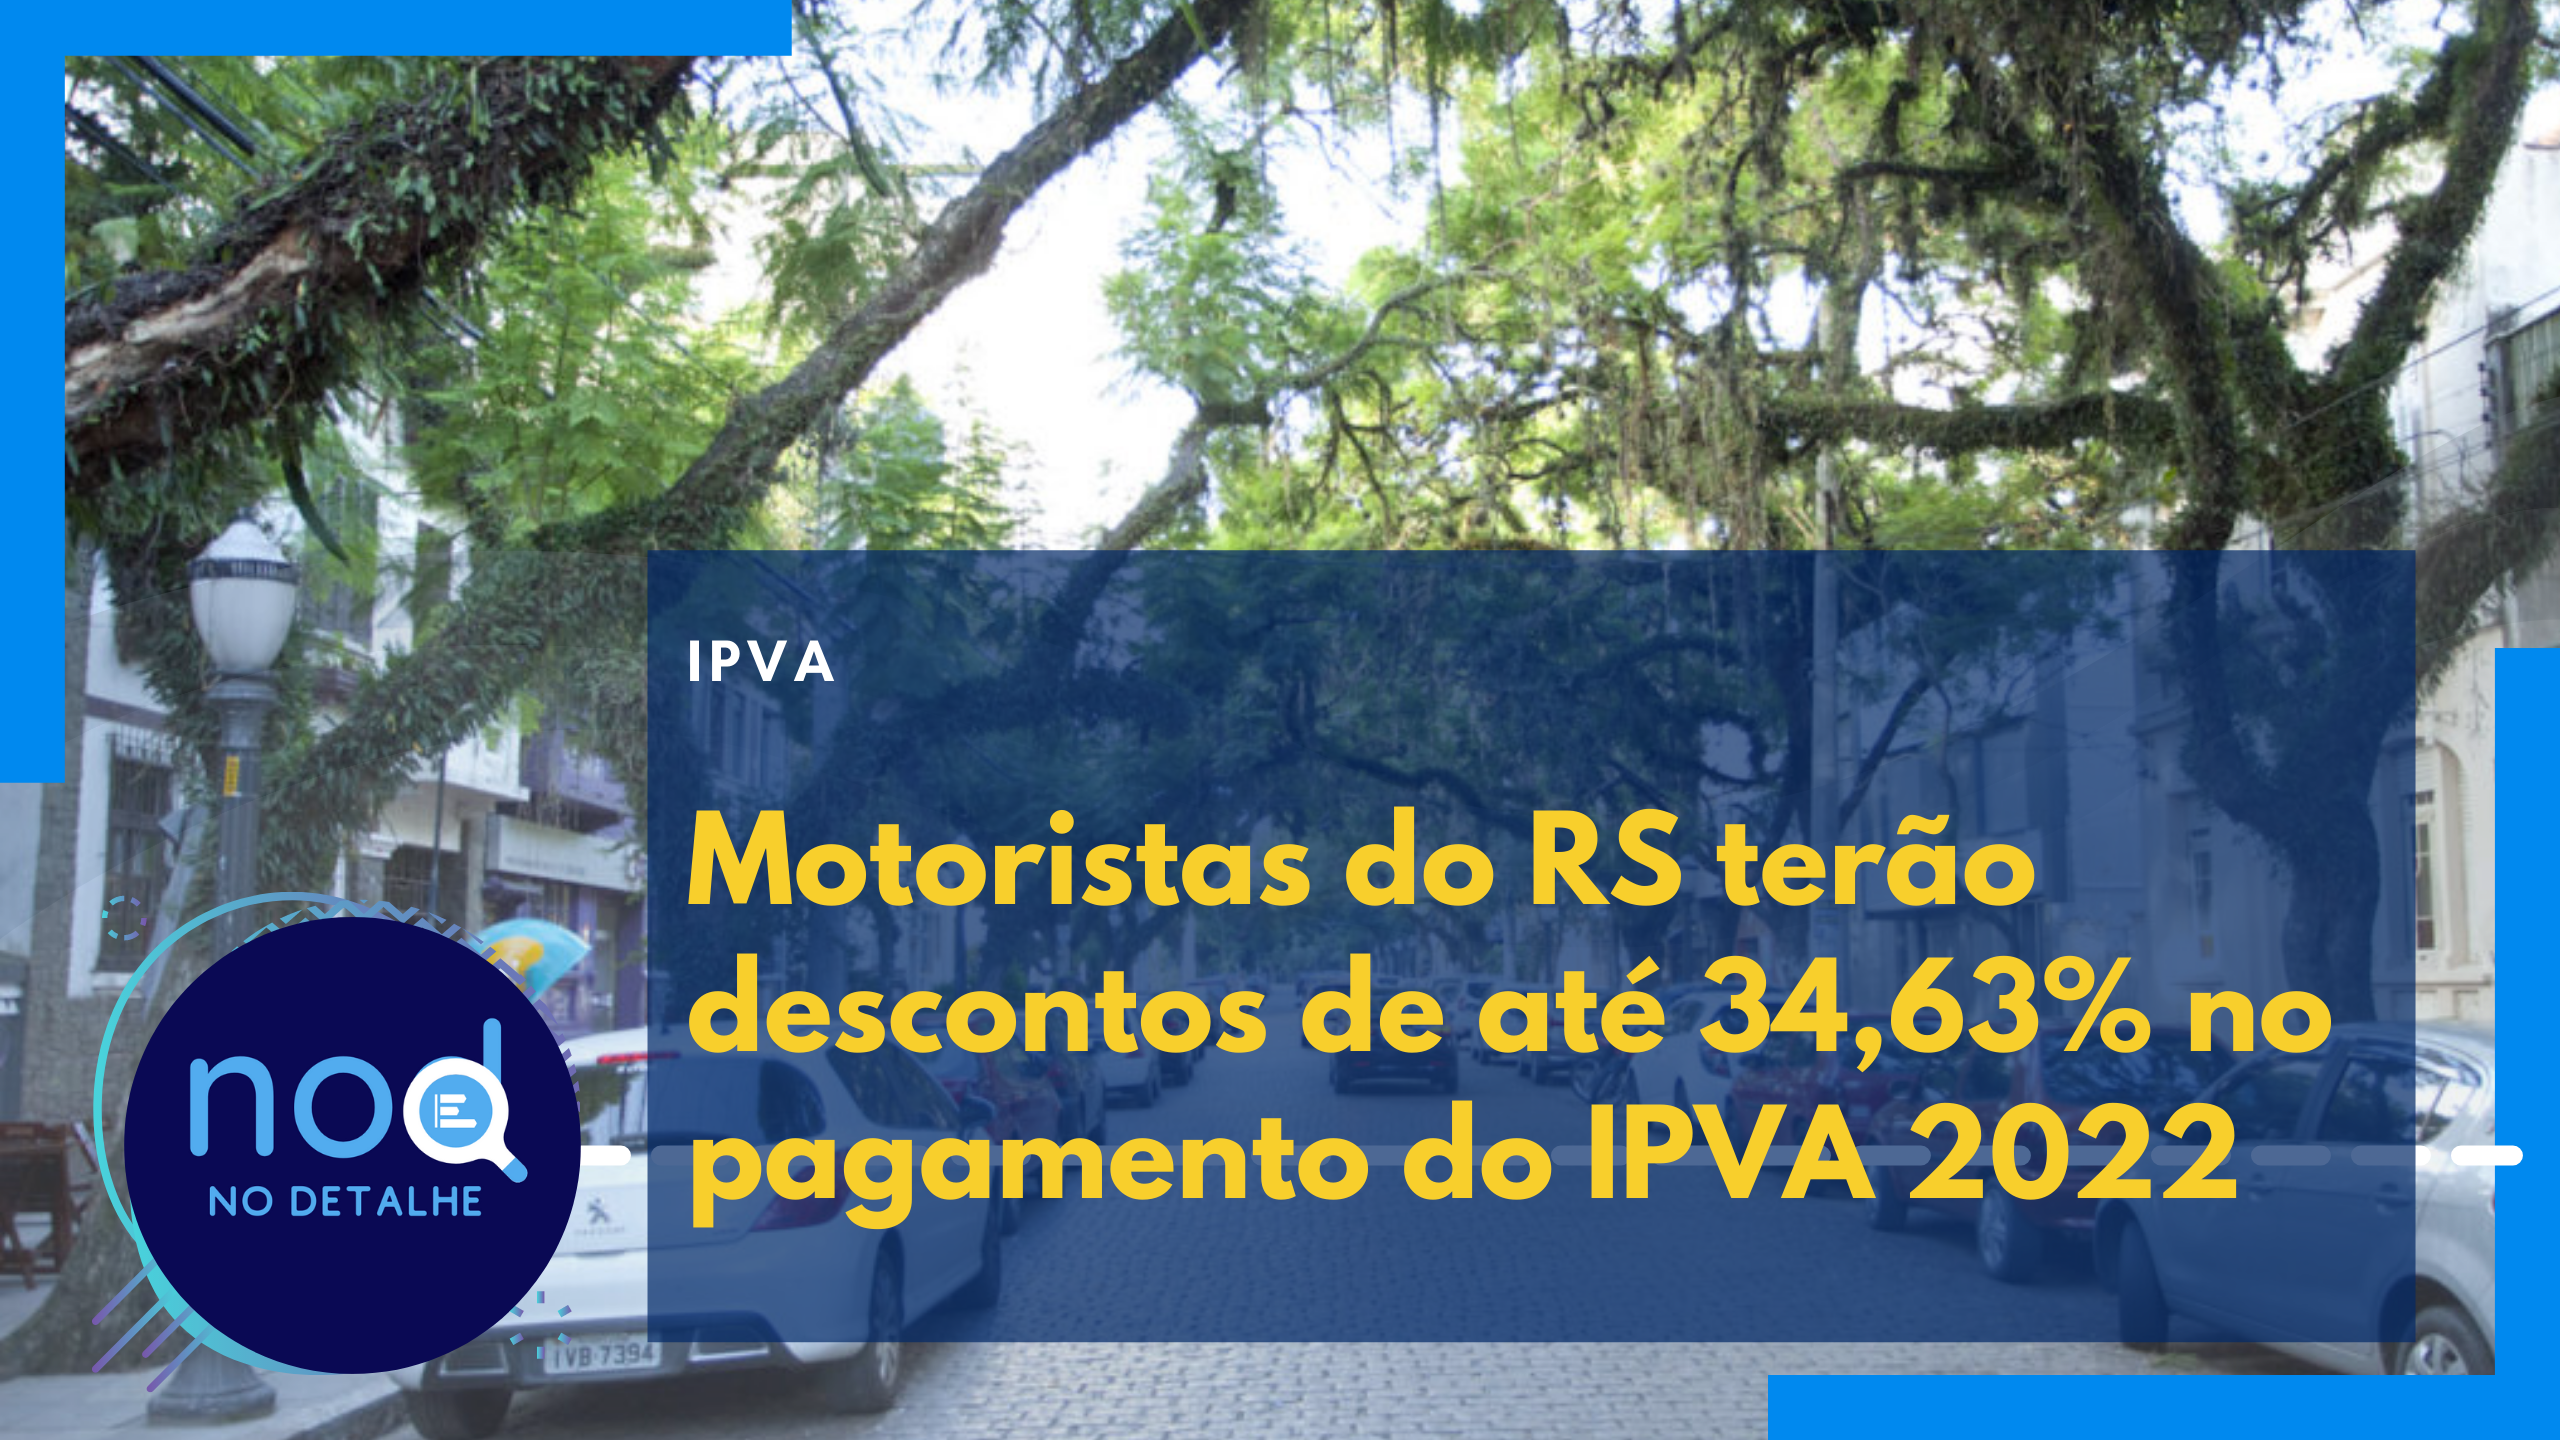 Motoristas do RS terão descontos de até 34,63% no pagamento do IPVA 2022